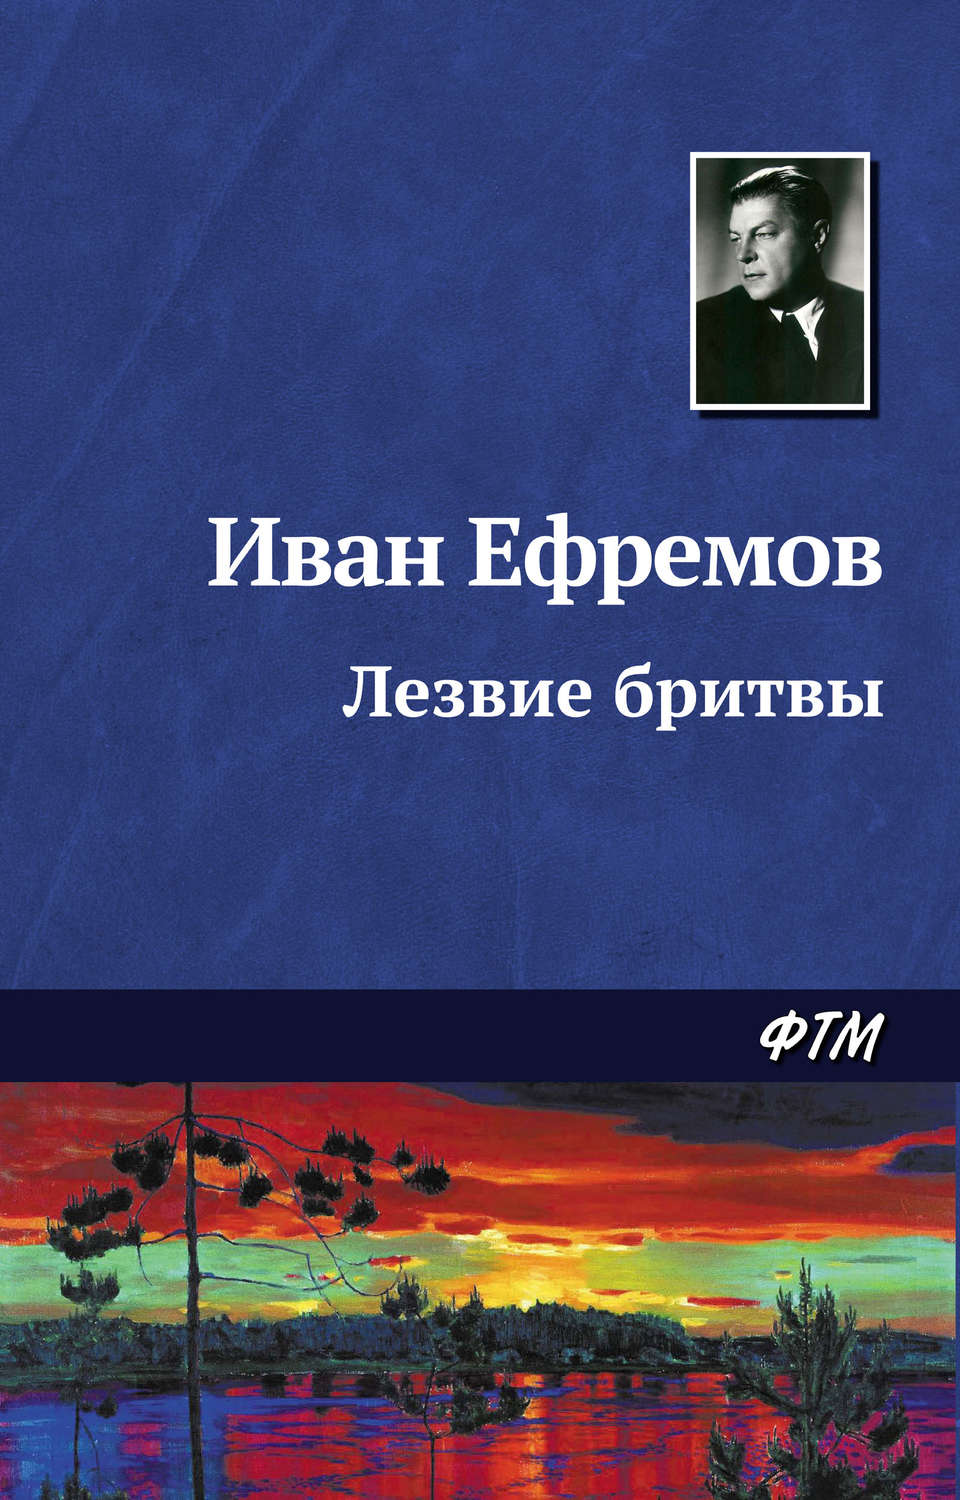 Иван ефремов книги fb2 скачать бесплатно